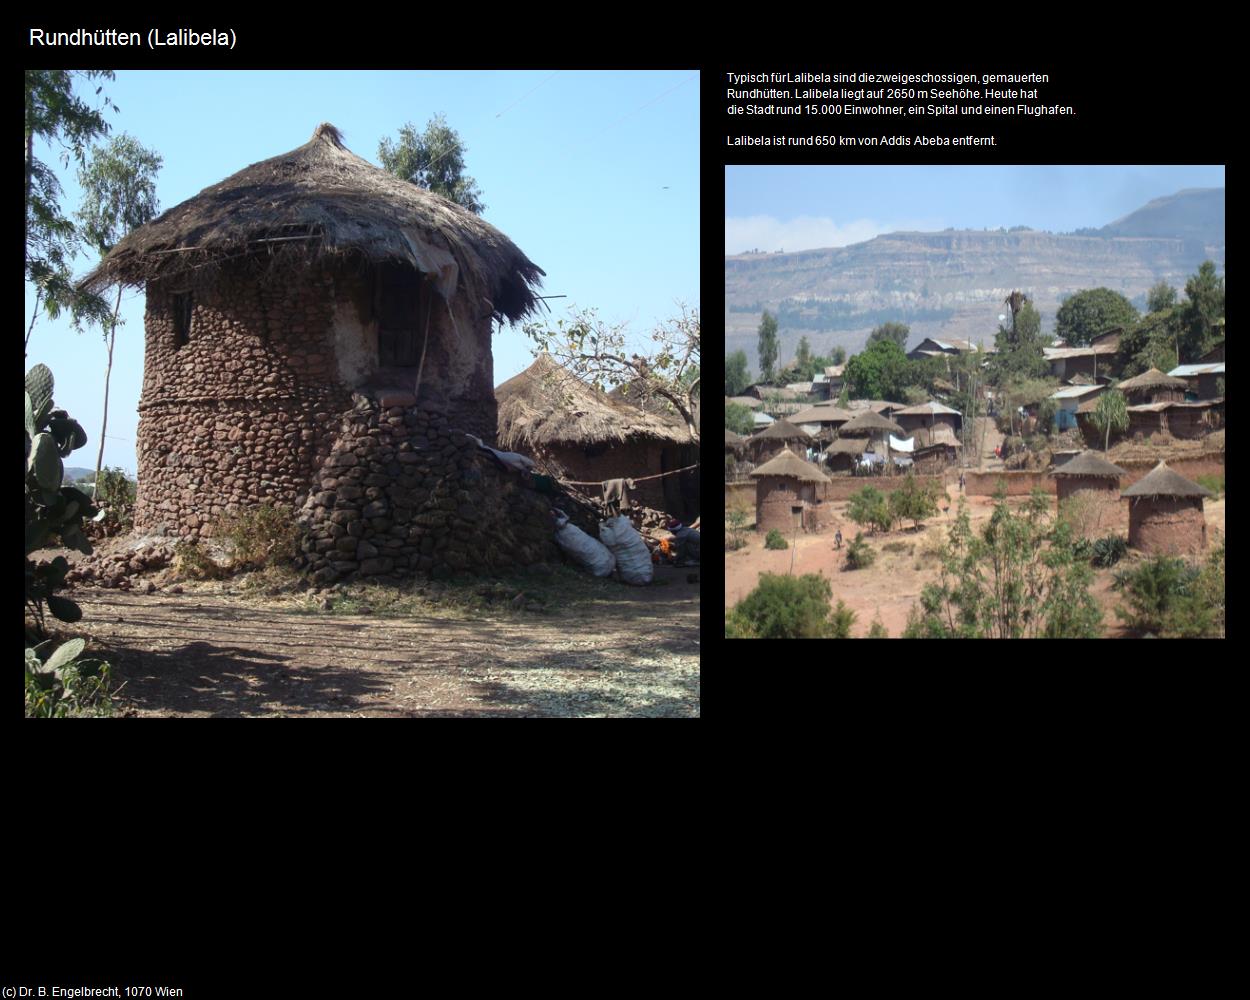 Rundhütten (Lalibela) in Äthiopien